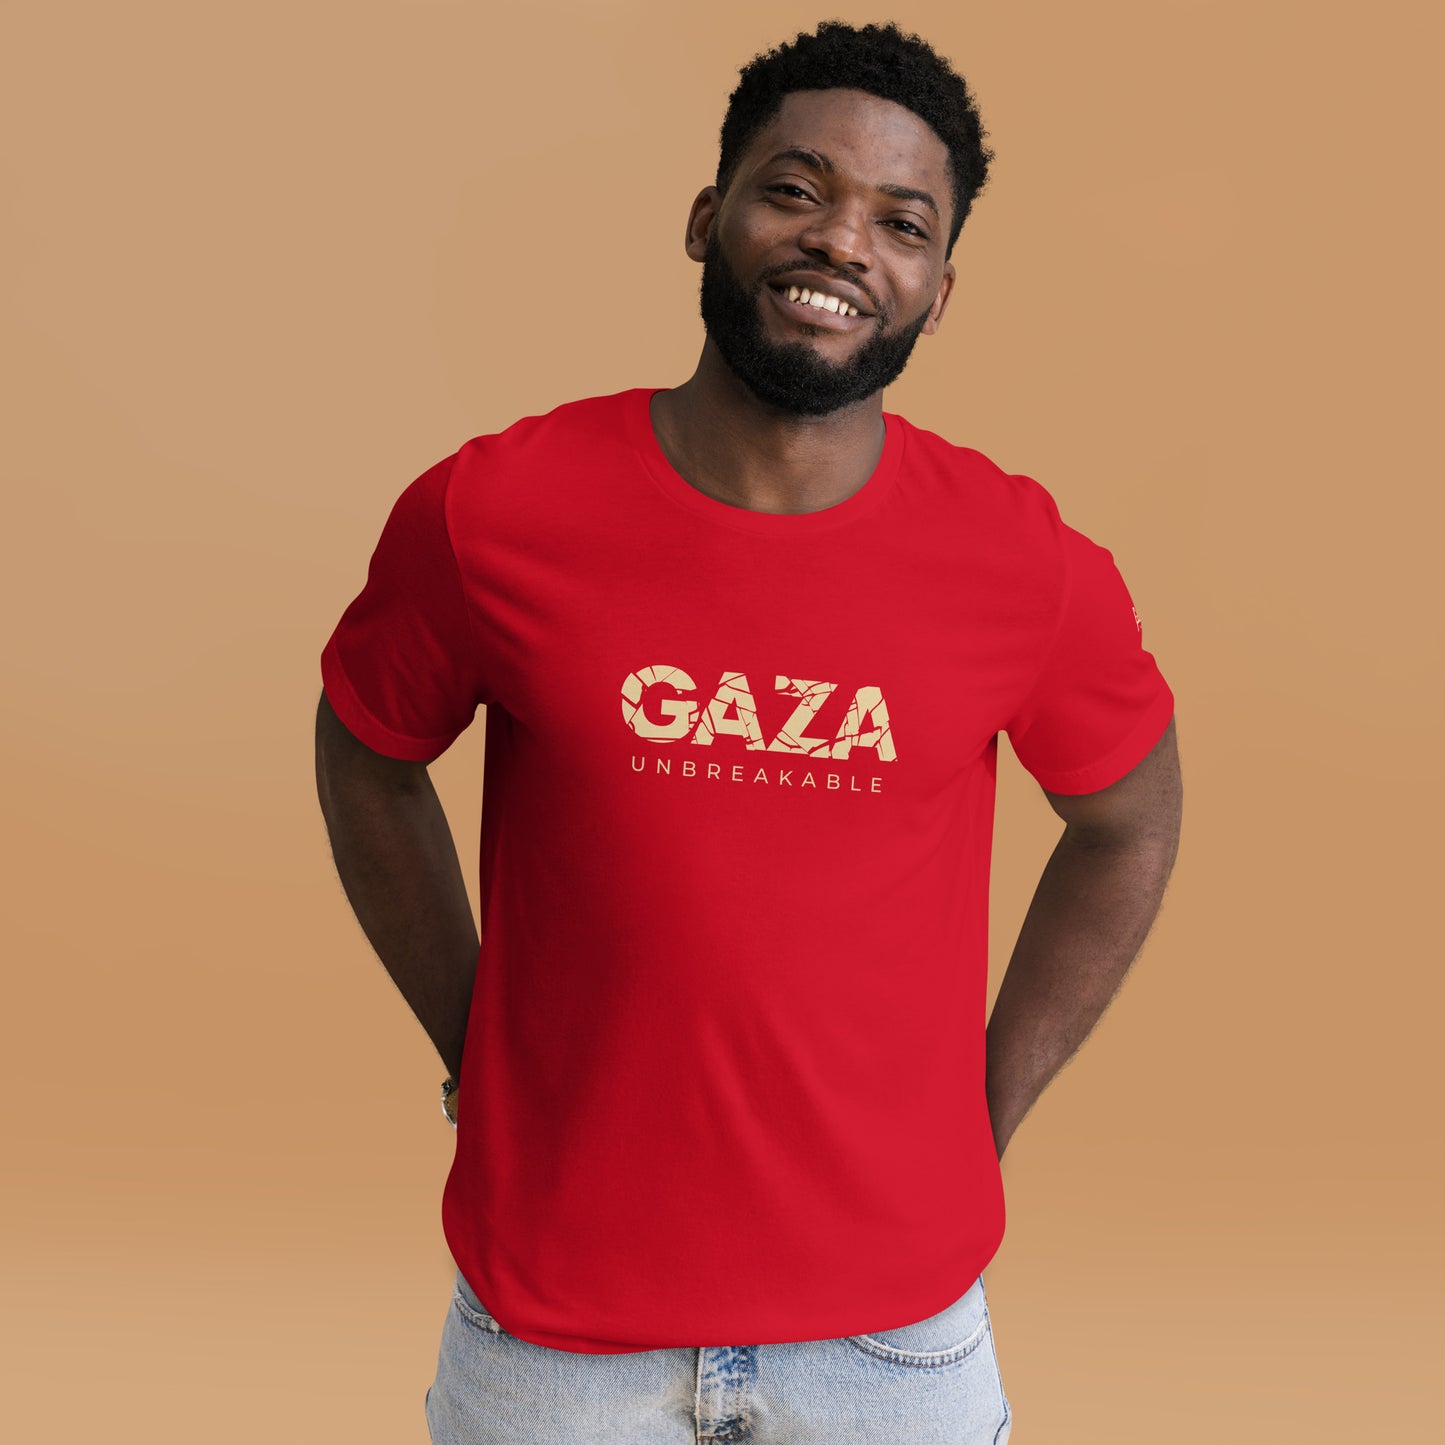 Unbreakable - Gaza